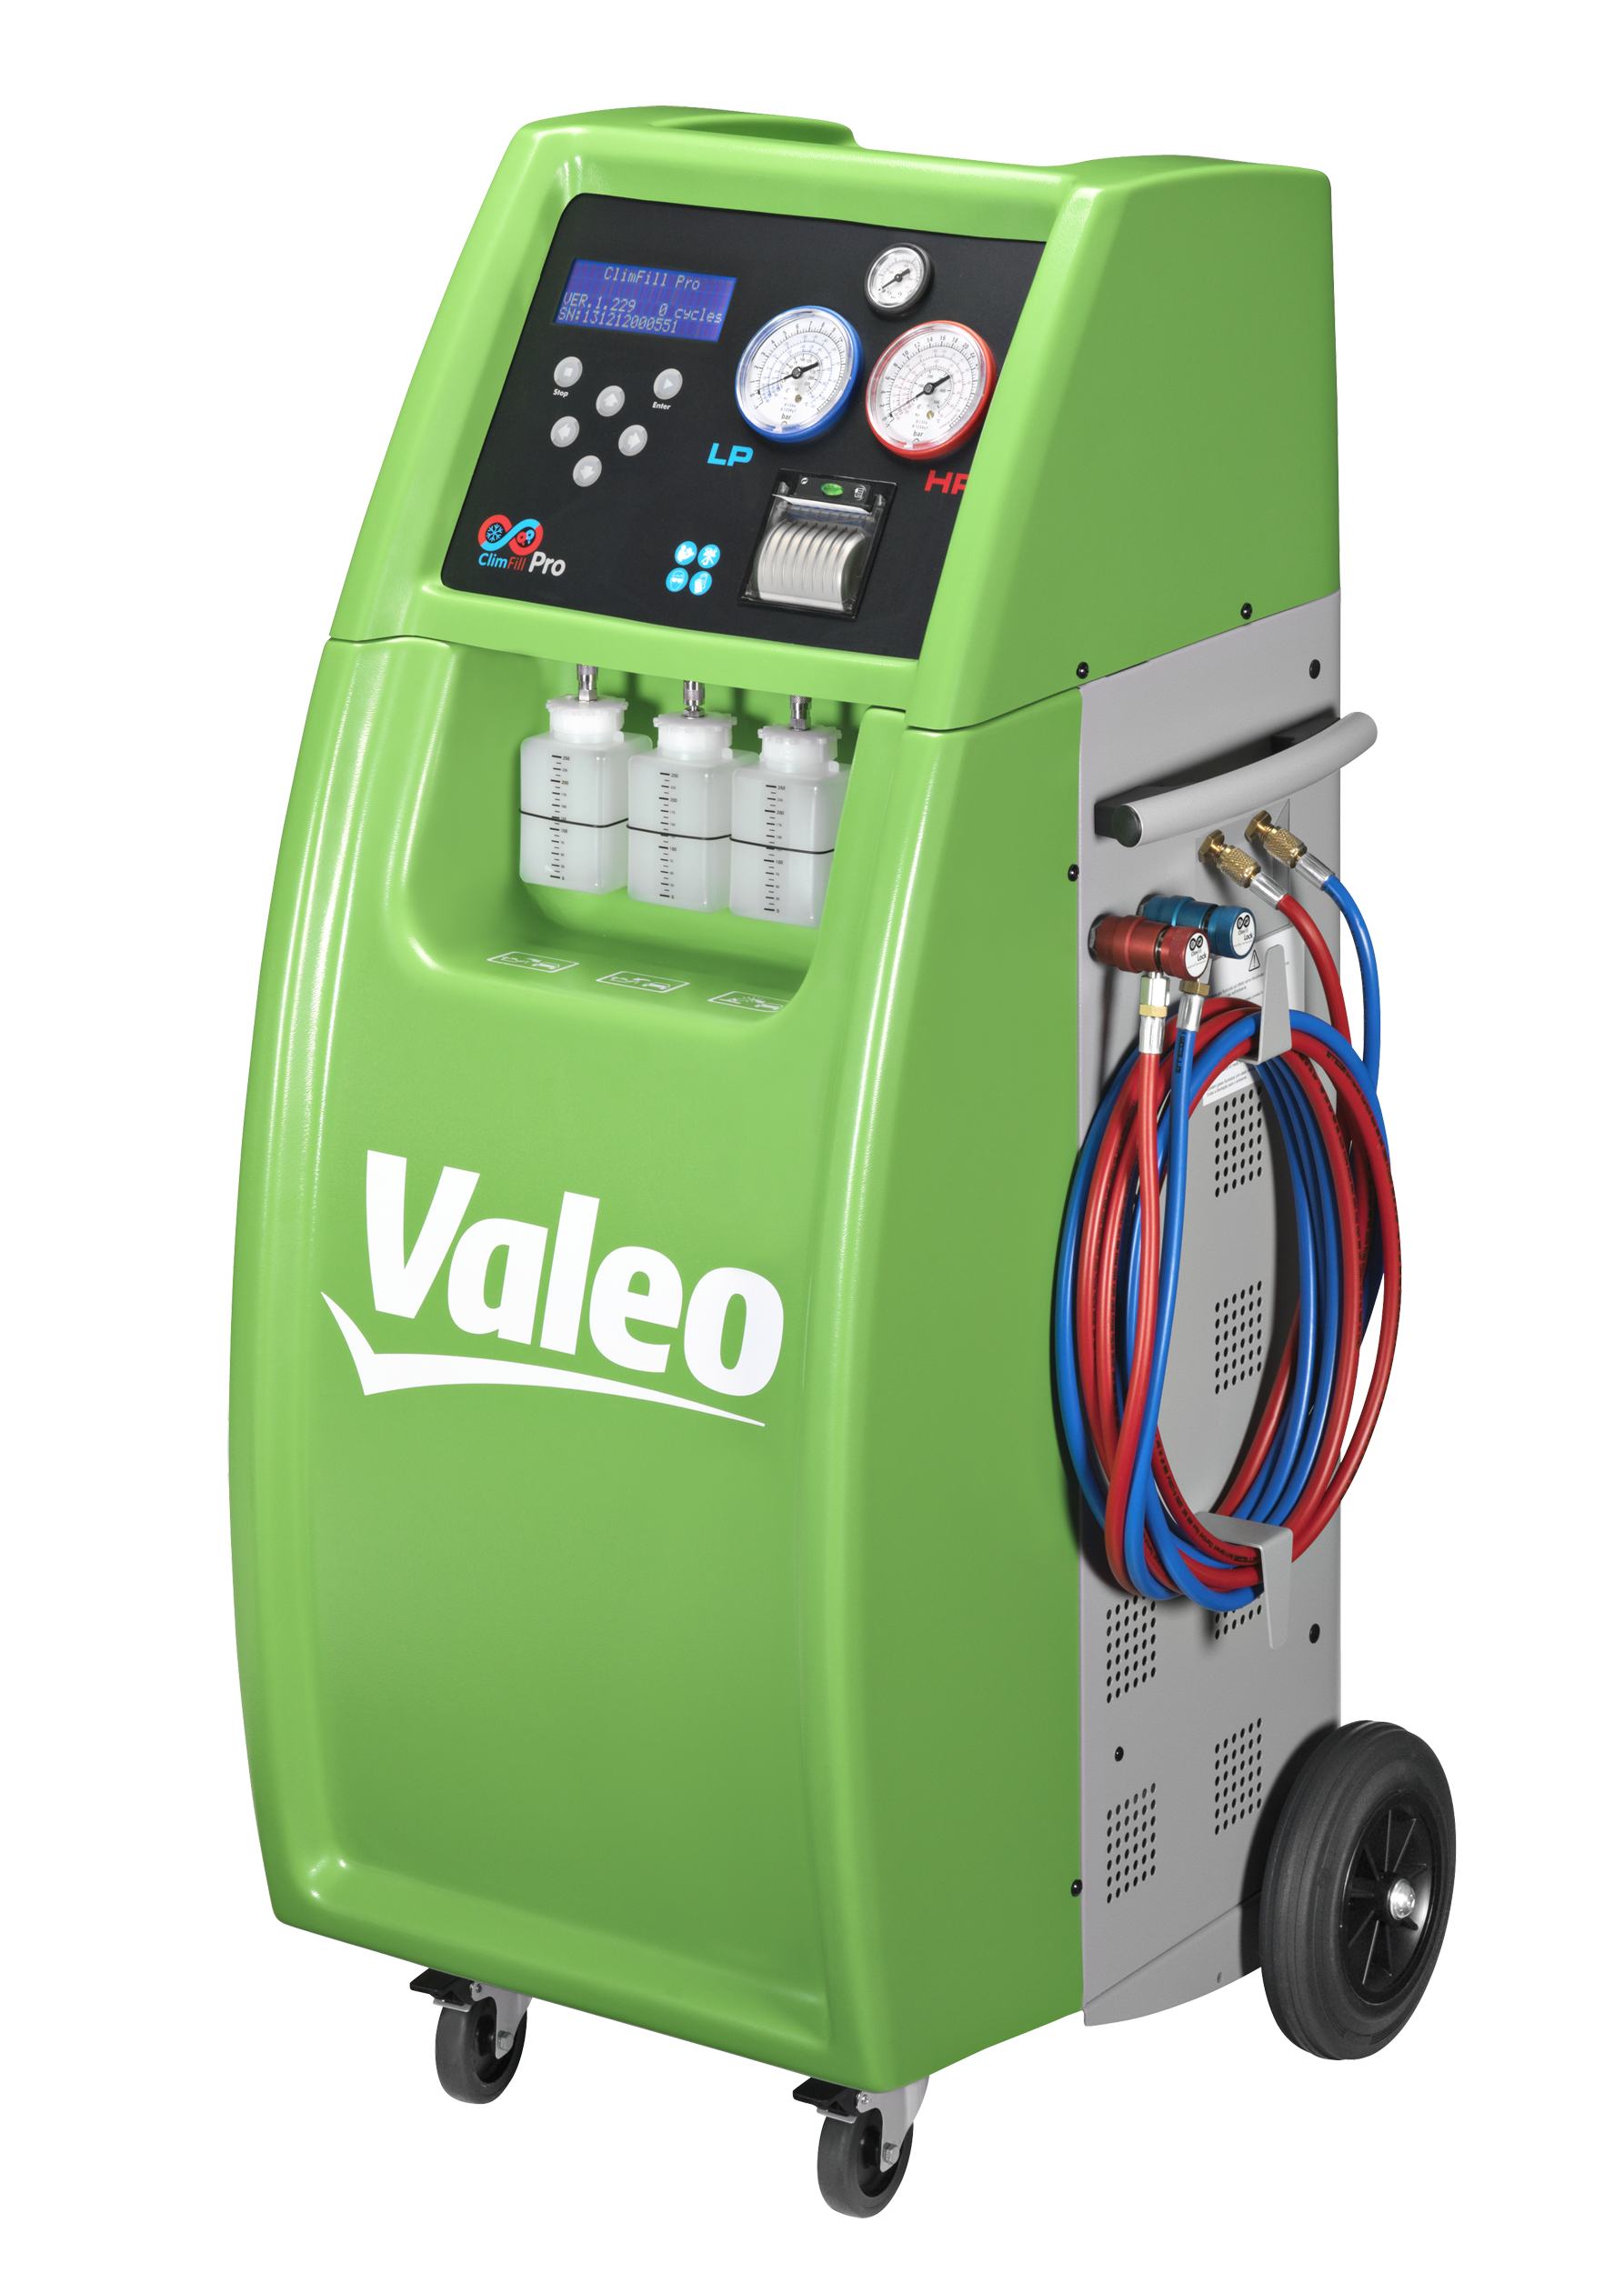 Valeo Air Conditioning climfill pro refill station